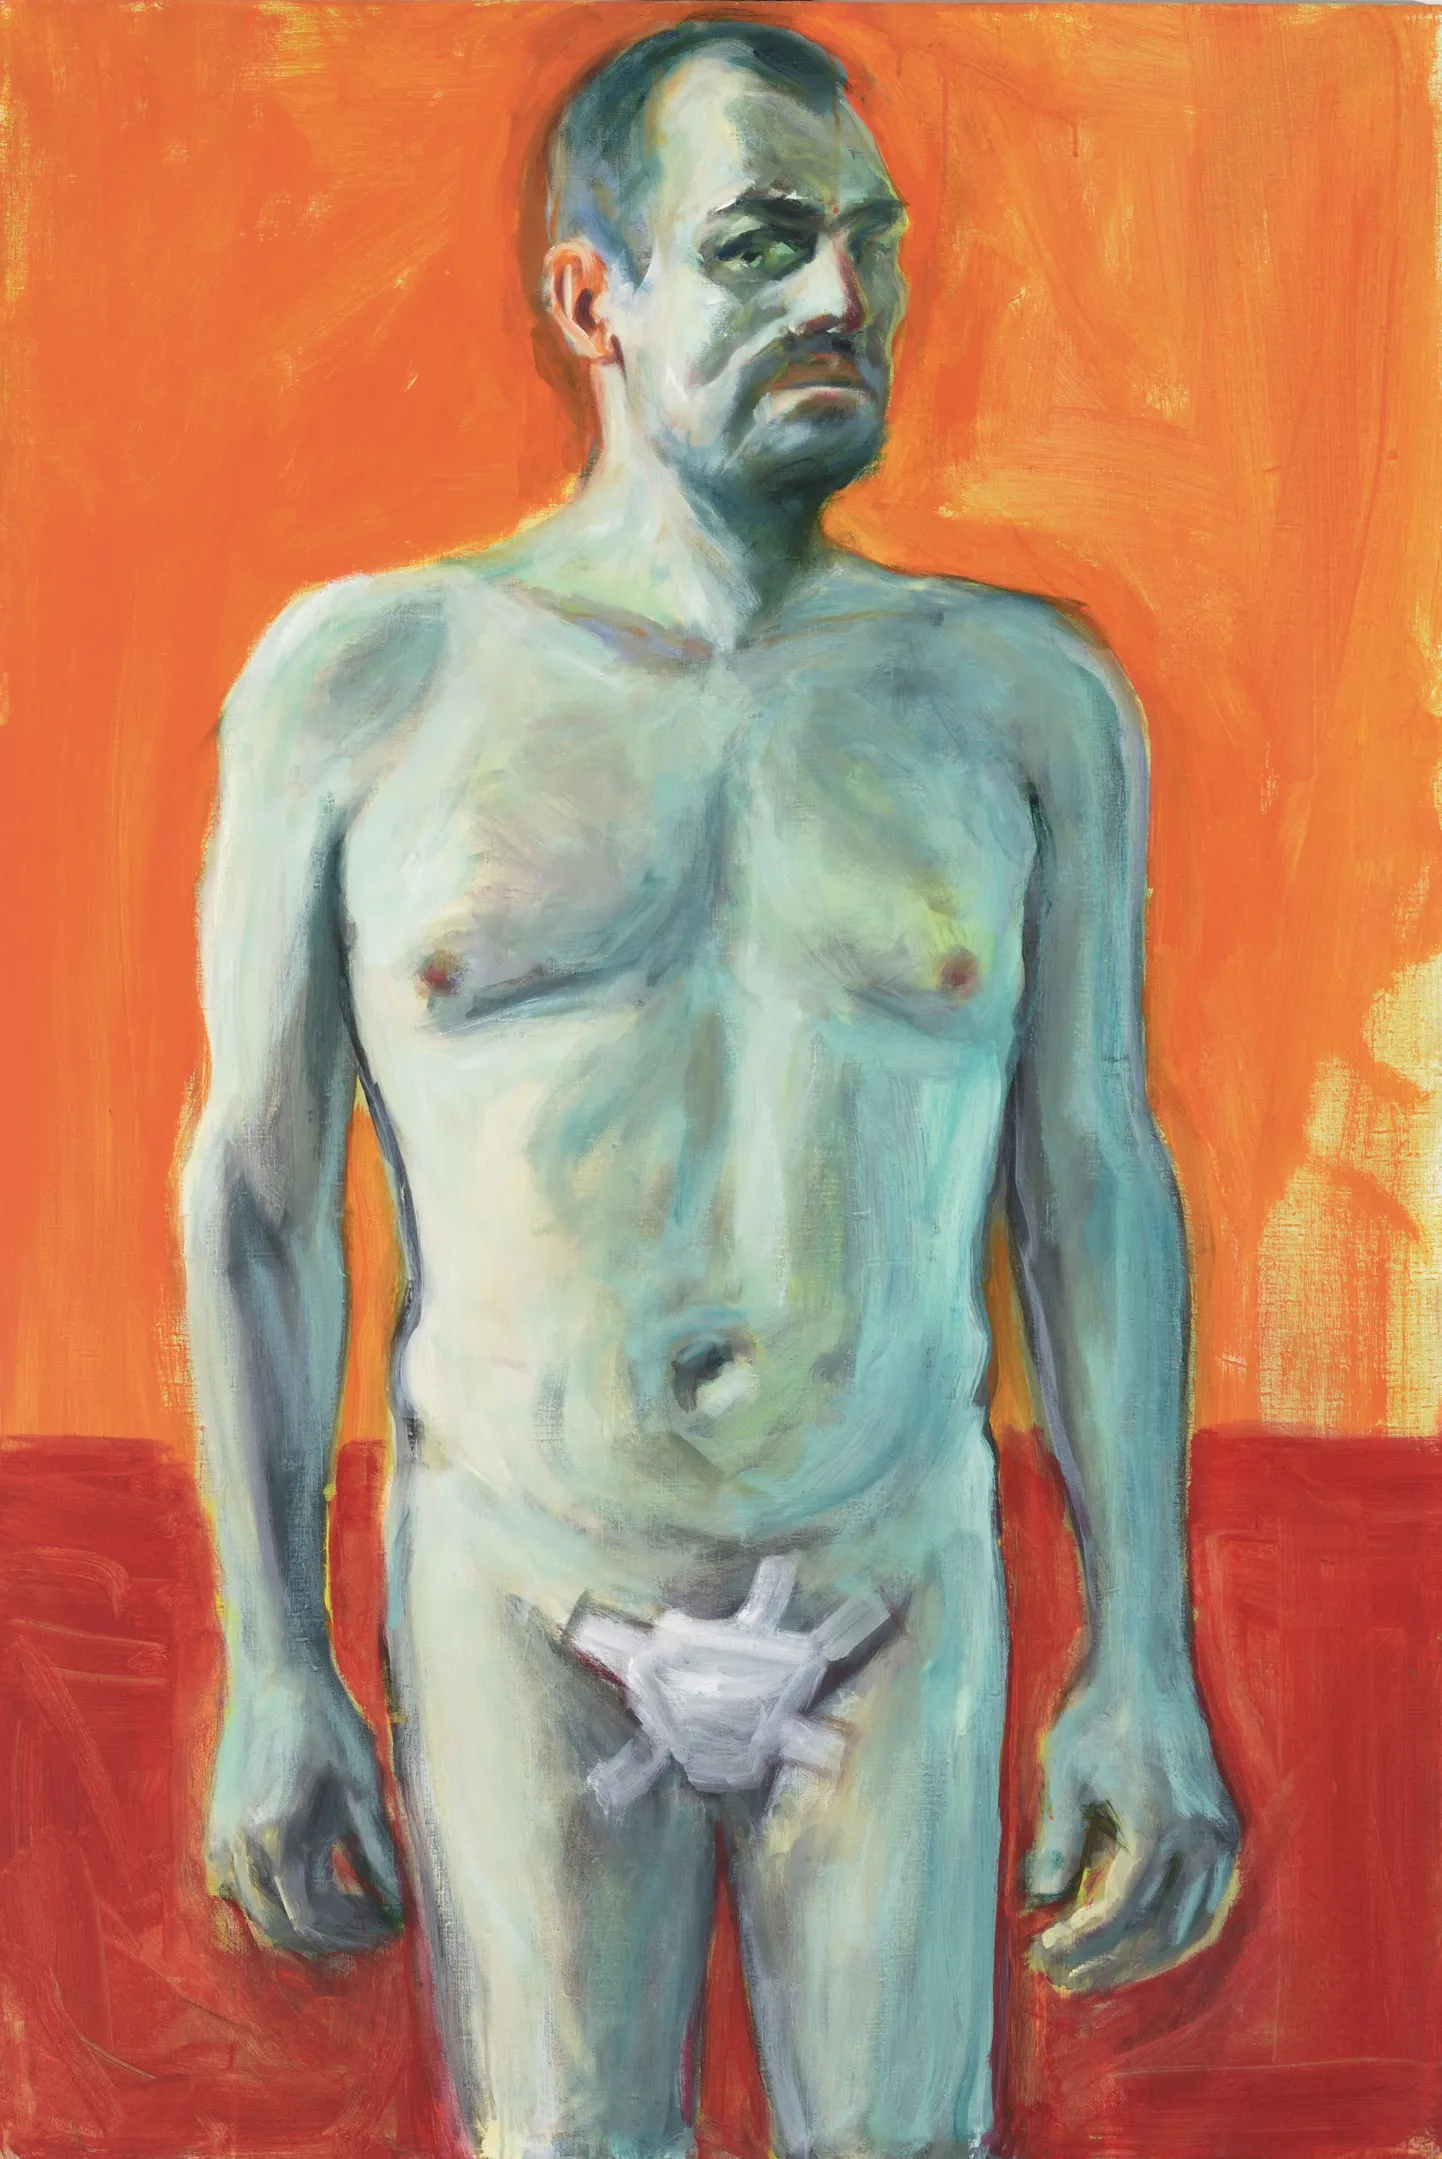 Jaan Toomik- Self-portrait with cut penis. Homage to Van Gogh